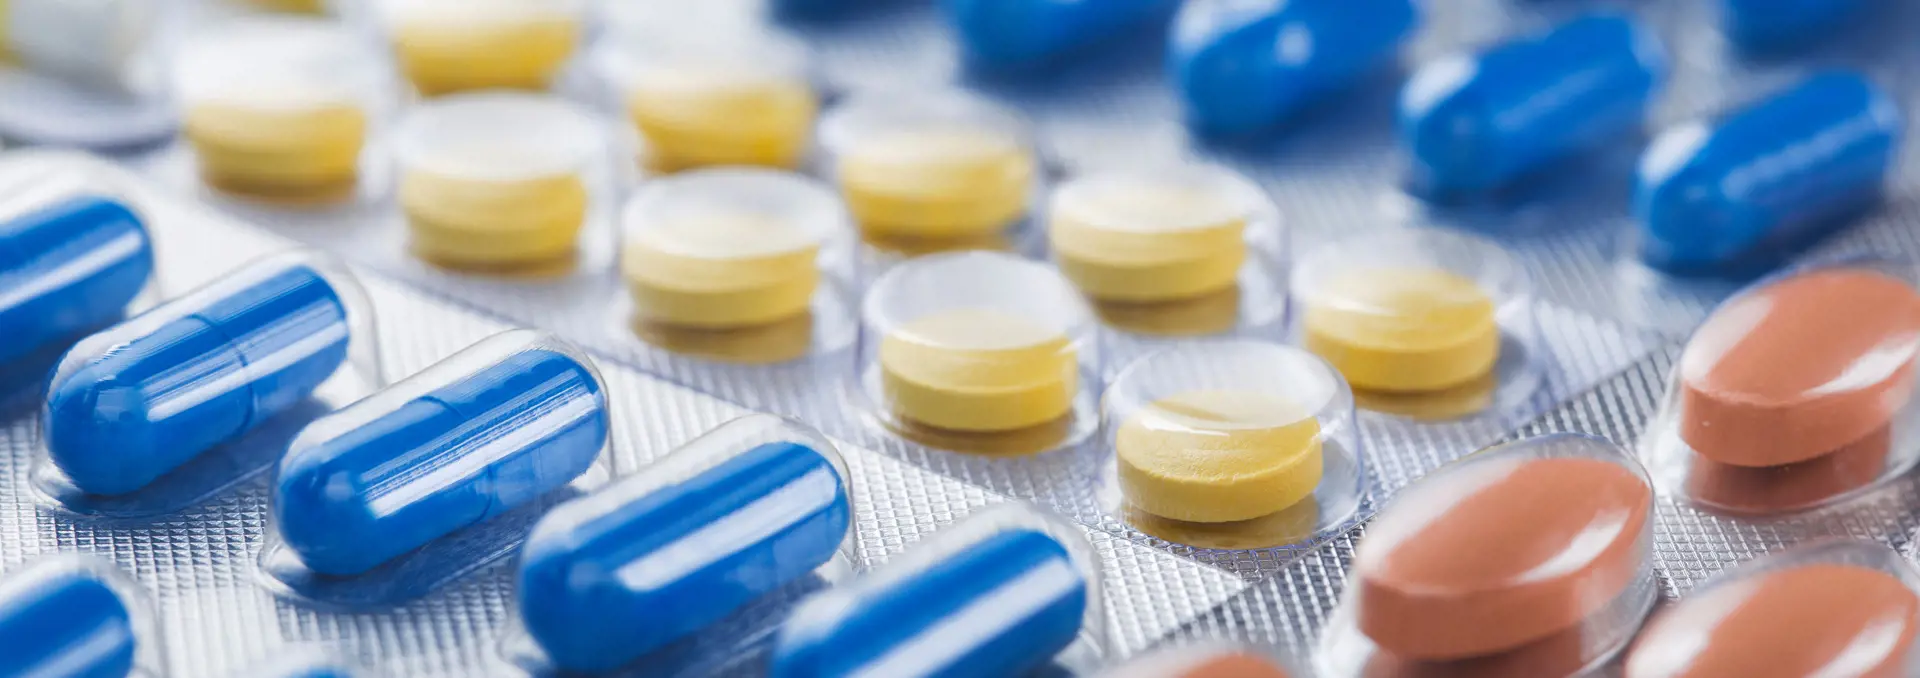 Blisterpackungen von blauen Kapseln, gelbe Tabletten, braune Tabletten